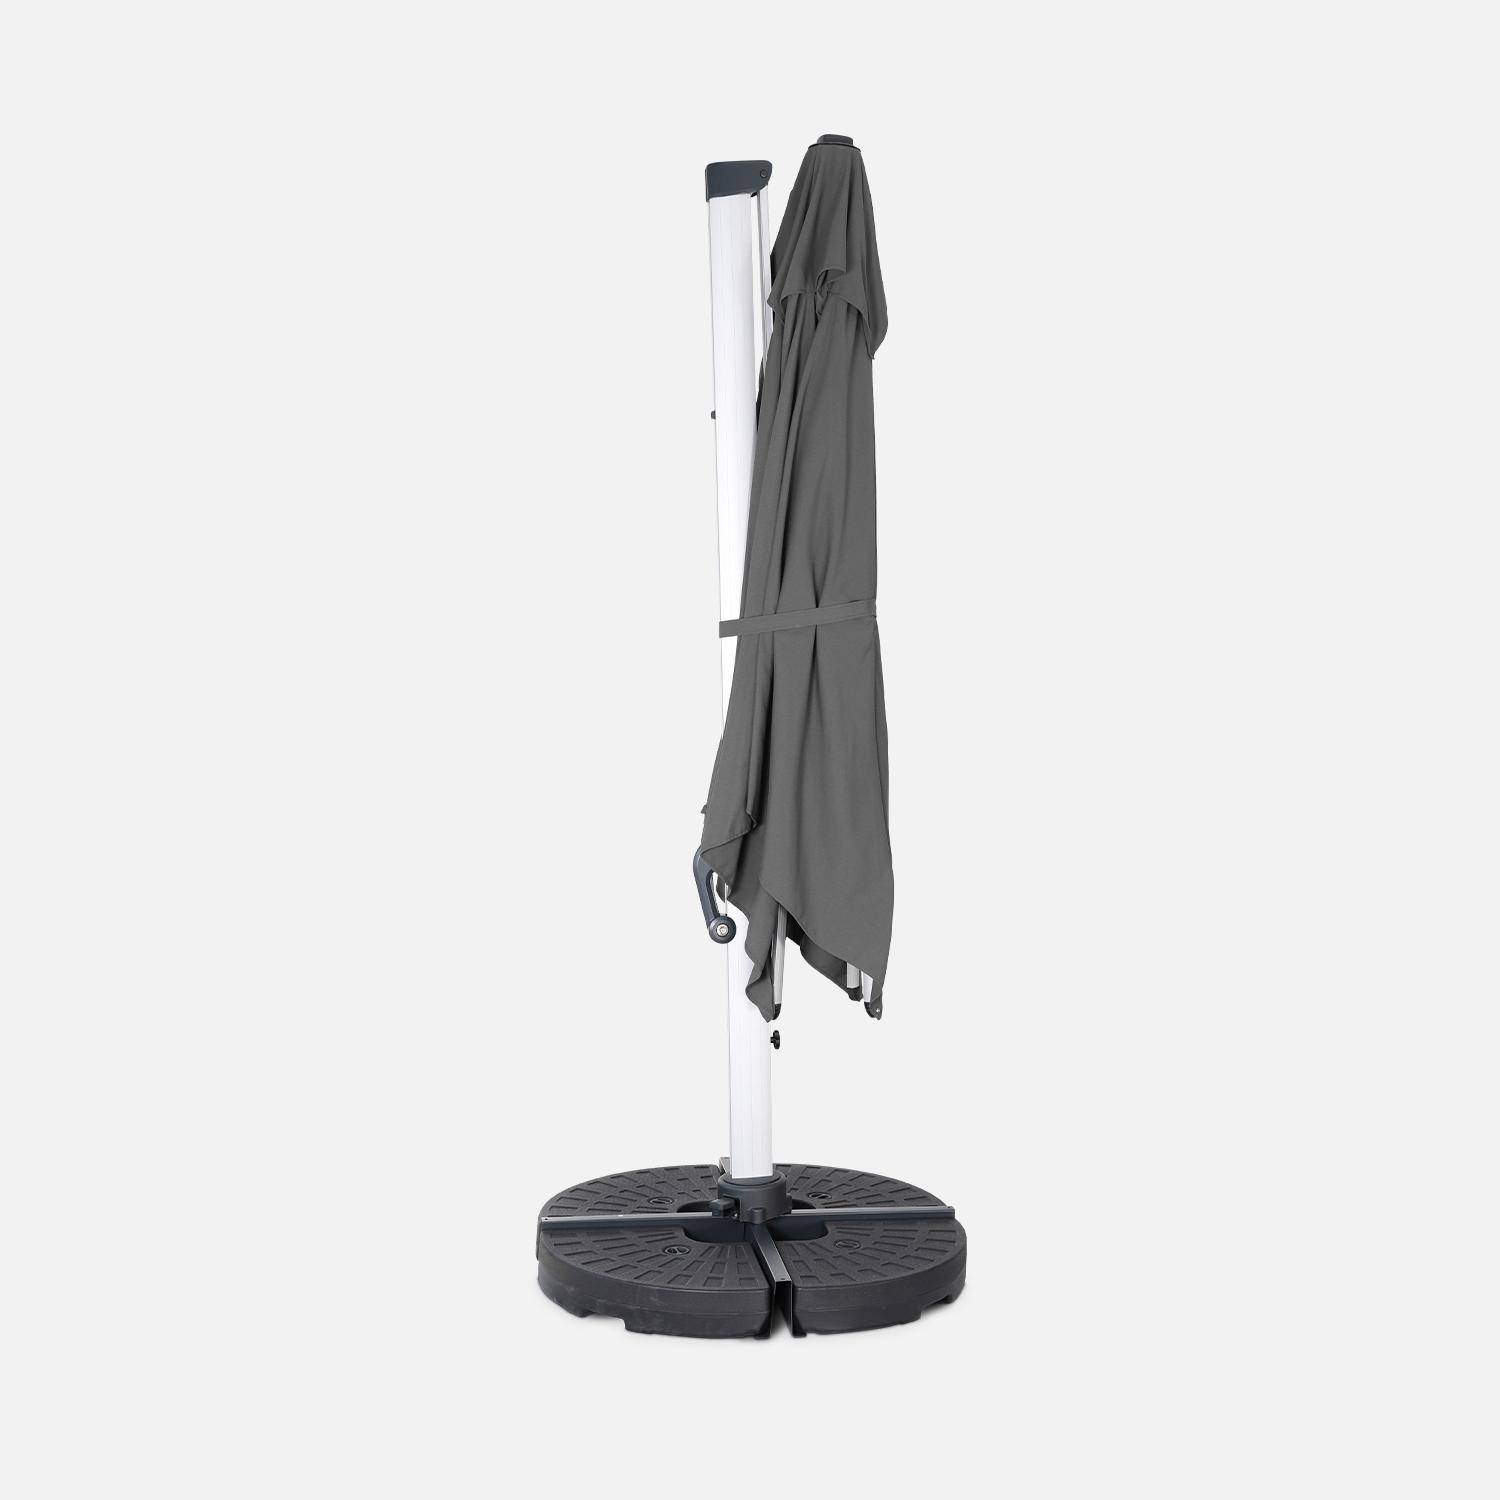 Topkwaliteit parasol, 3x3m, grijs polyester doek, geanodiseerd aluminium frame, hoes inbegrepen Photo4